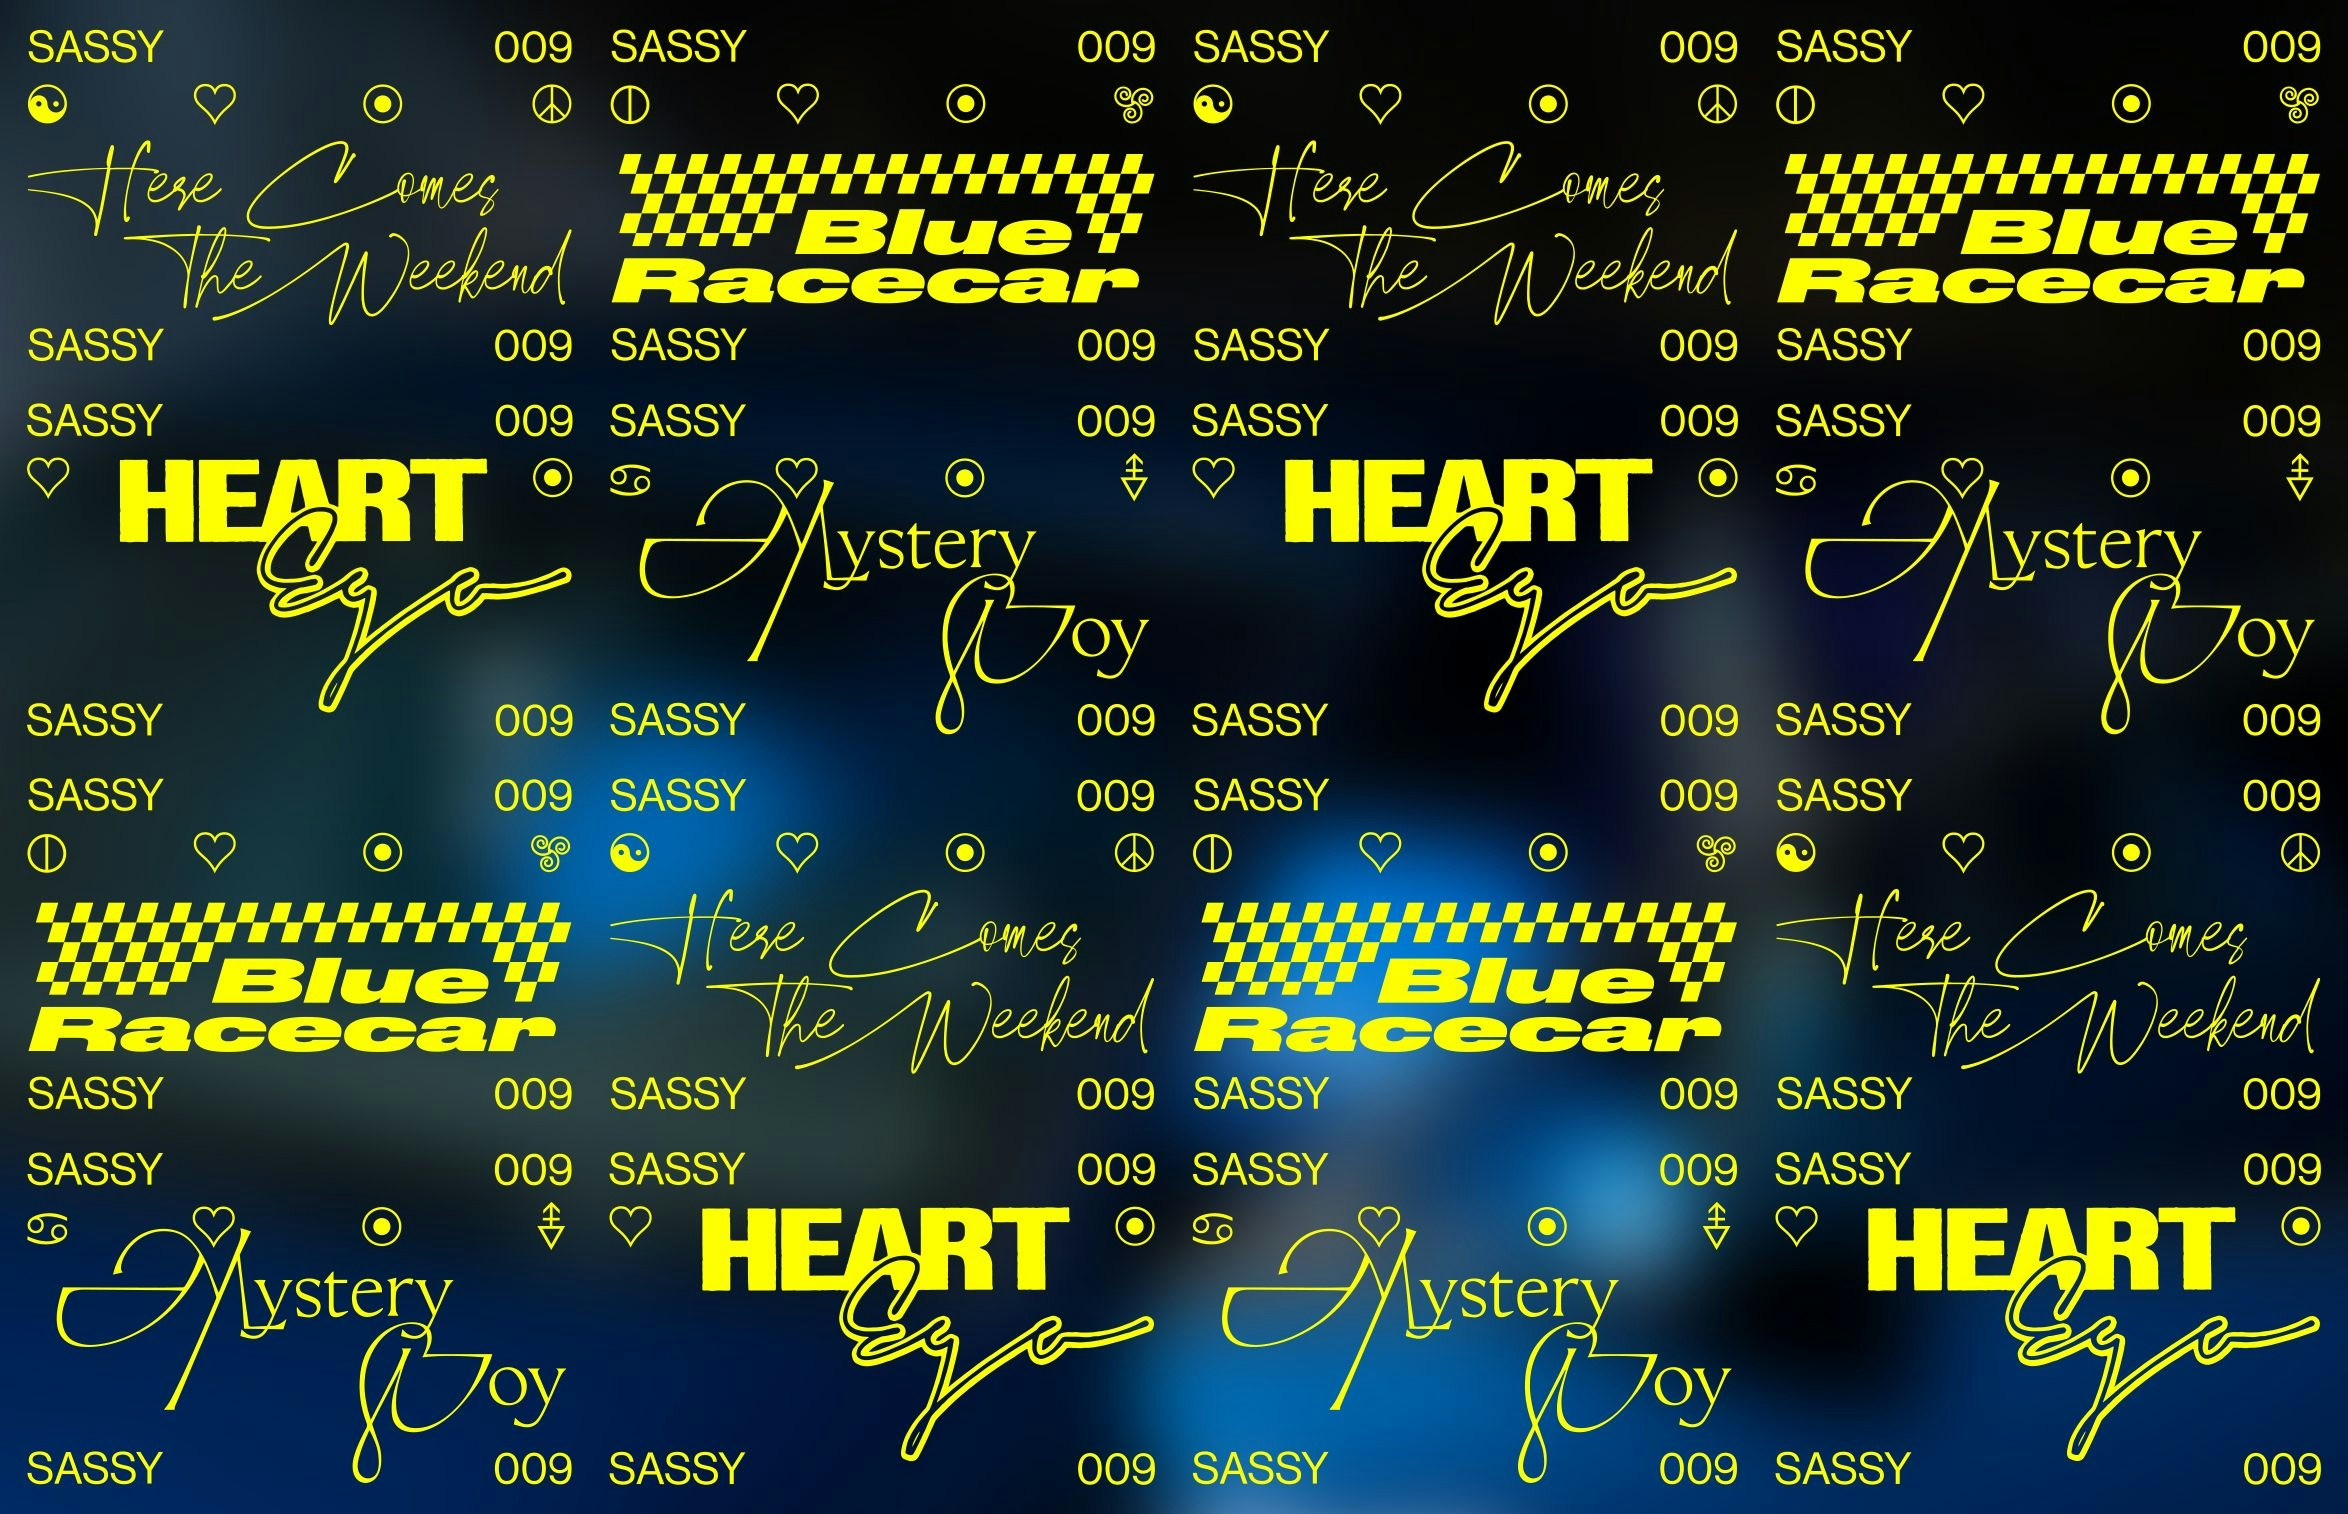 Sassy 009 Logos